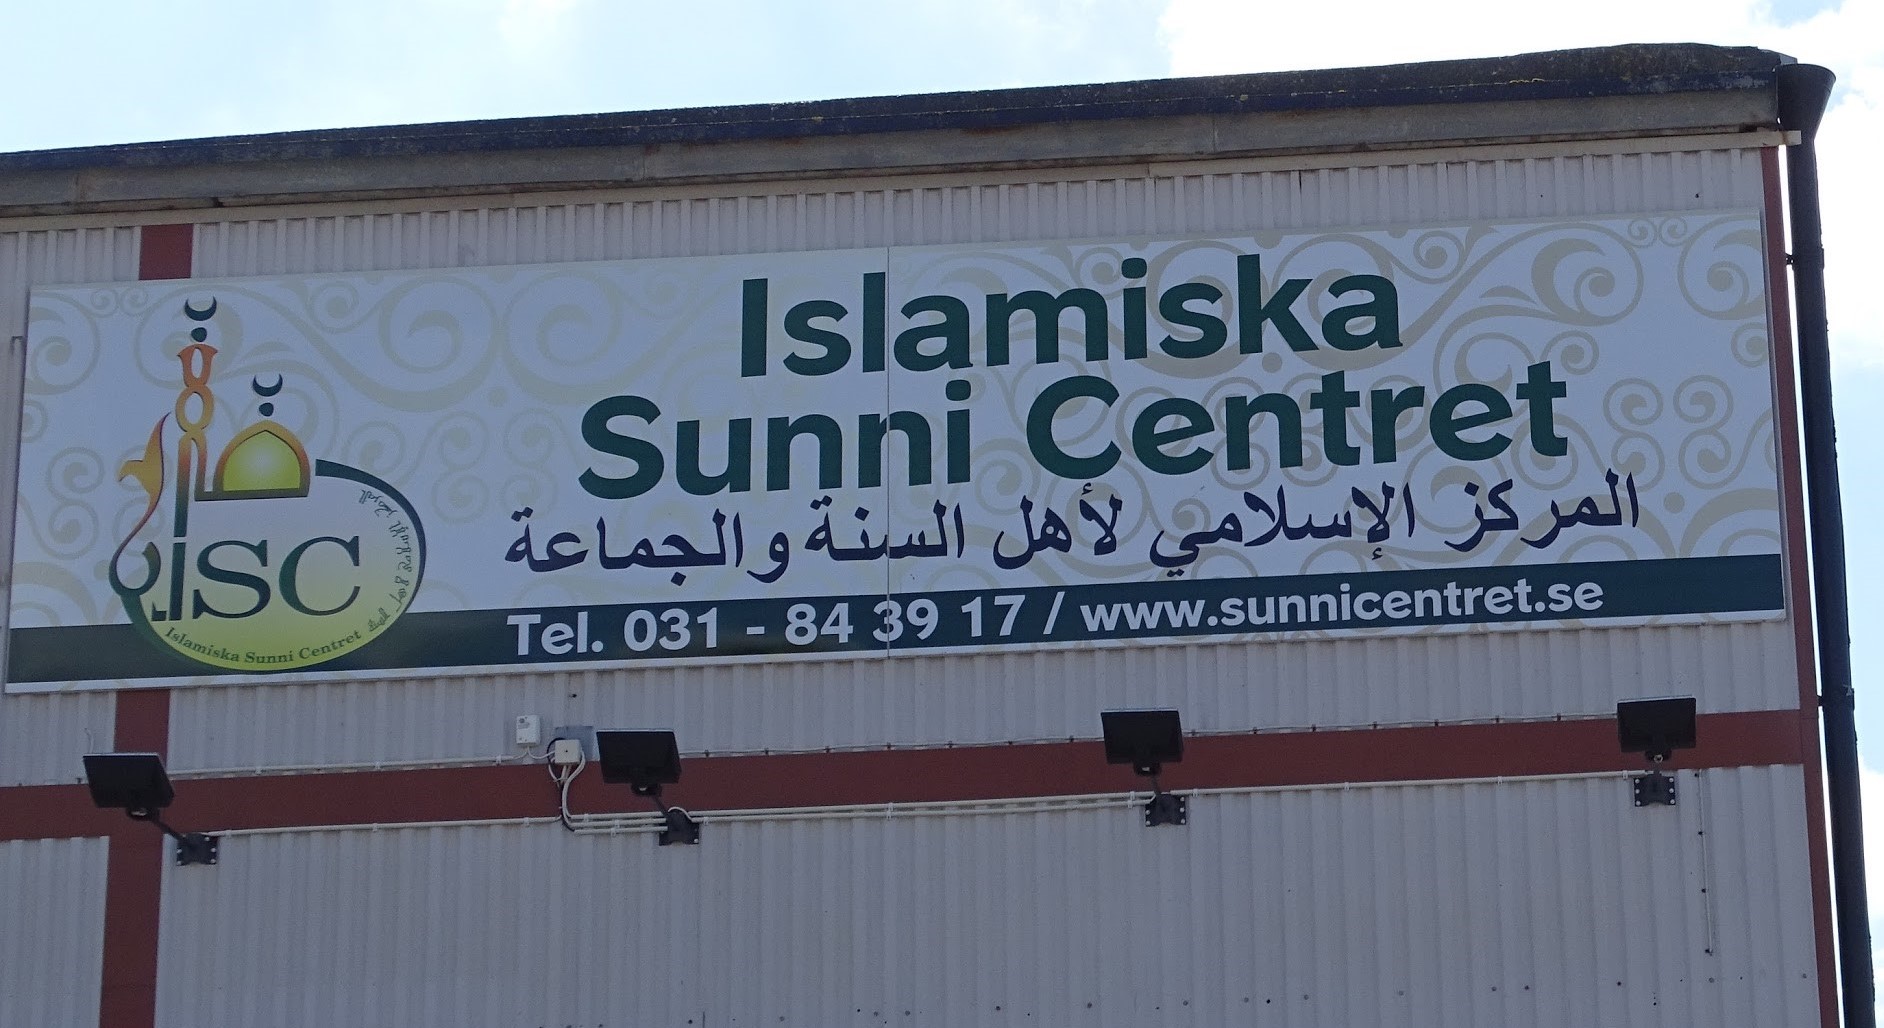 Bilden visar skylten till Islamiska Sunnicentret. Texten är grön och på skylten finns symboler kopplade till islam. Det svenska namnet står överst och det arabiska på raden under.